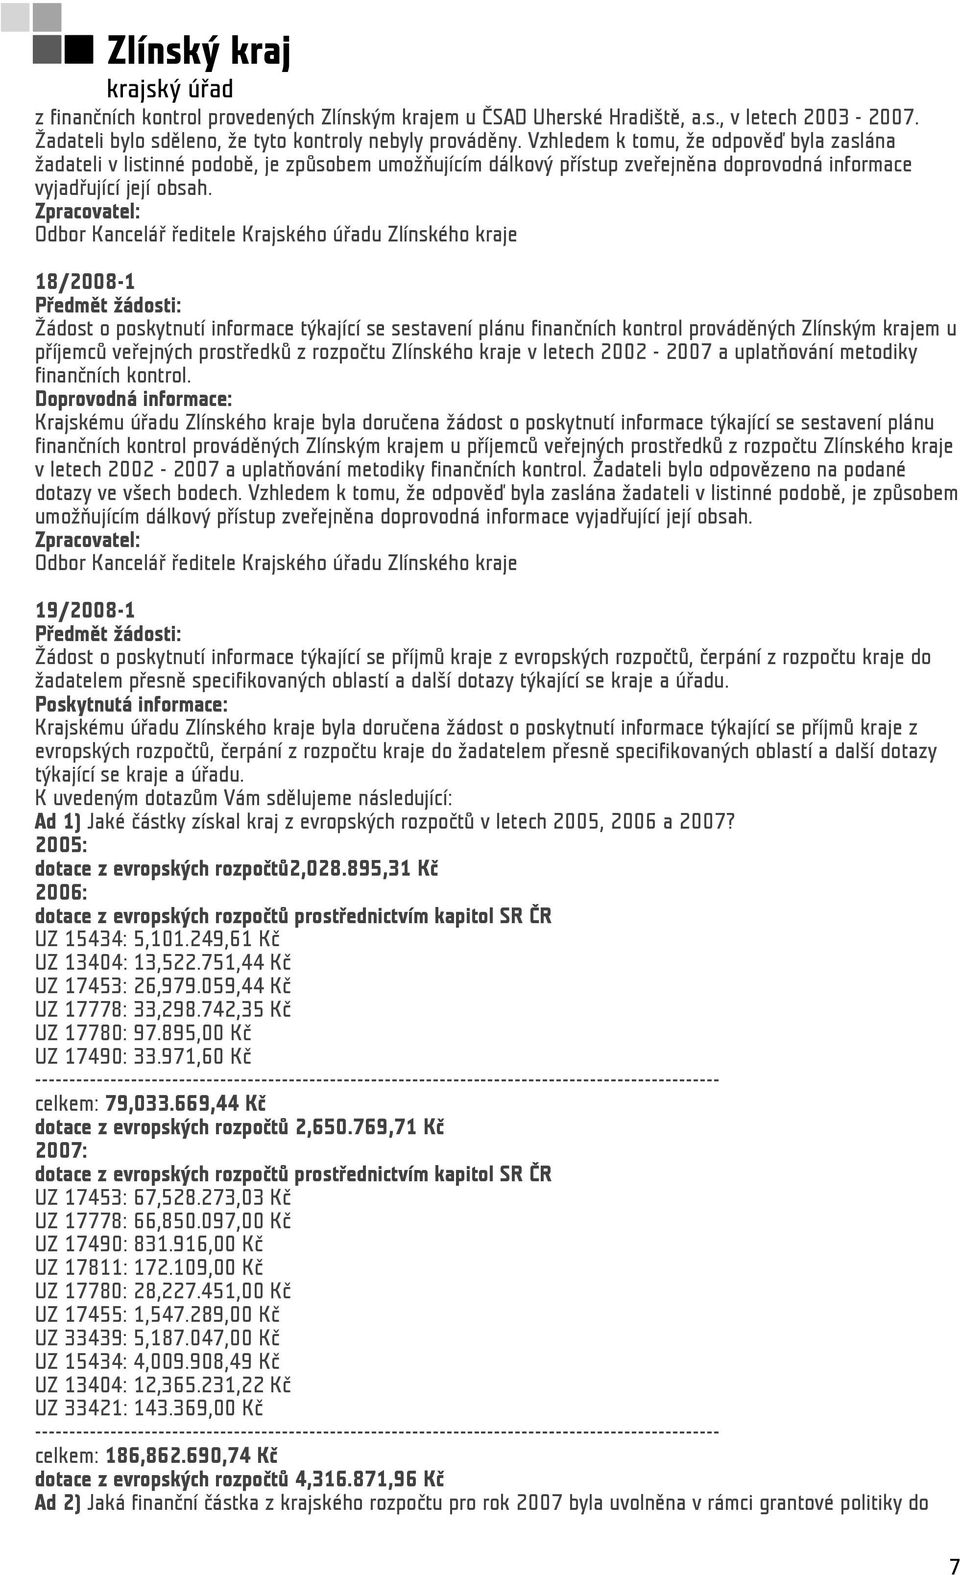 18/2008-1 Žádost o poskytnutí informace týkající se sestavení plánu finančních kontrol prováděných Zlínským krajem u příjemců veřejných prostředků z rozpočtu Zlínského kraje v letech 2002-2007 a